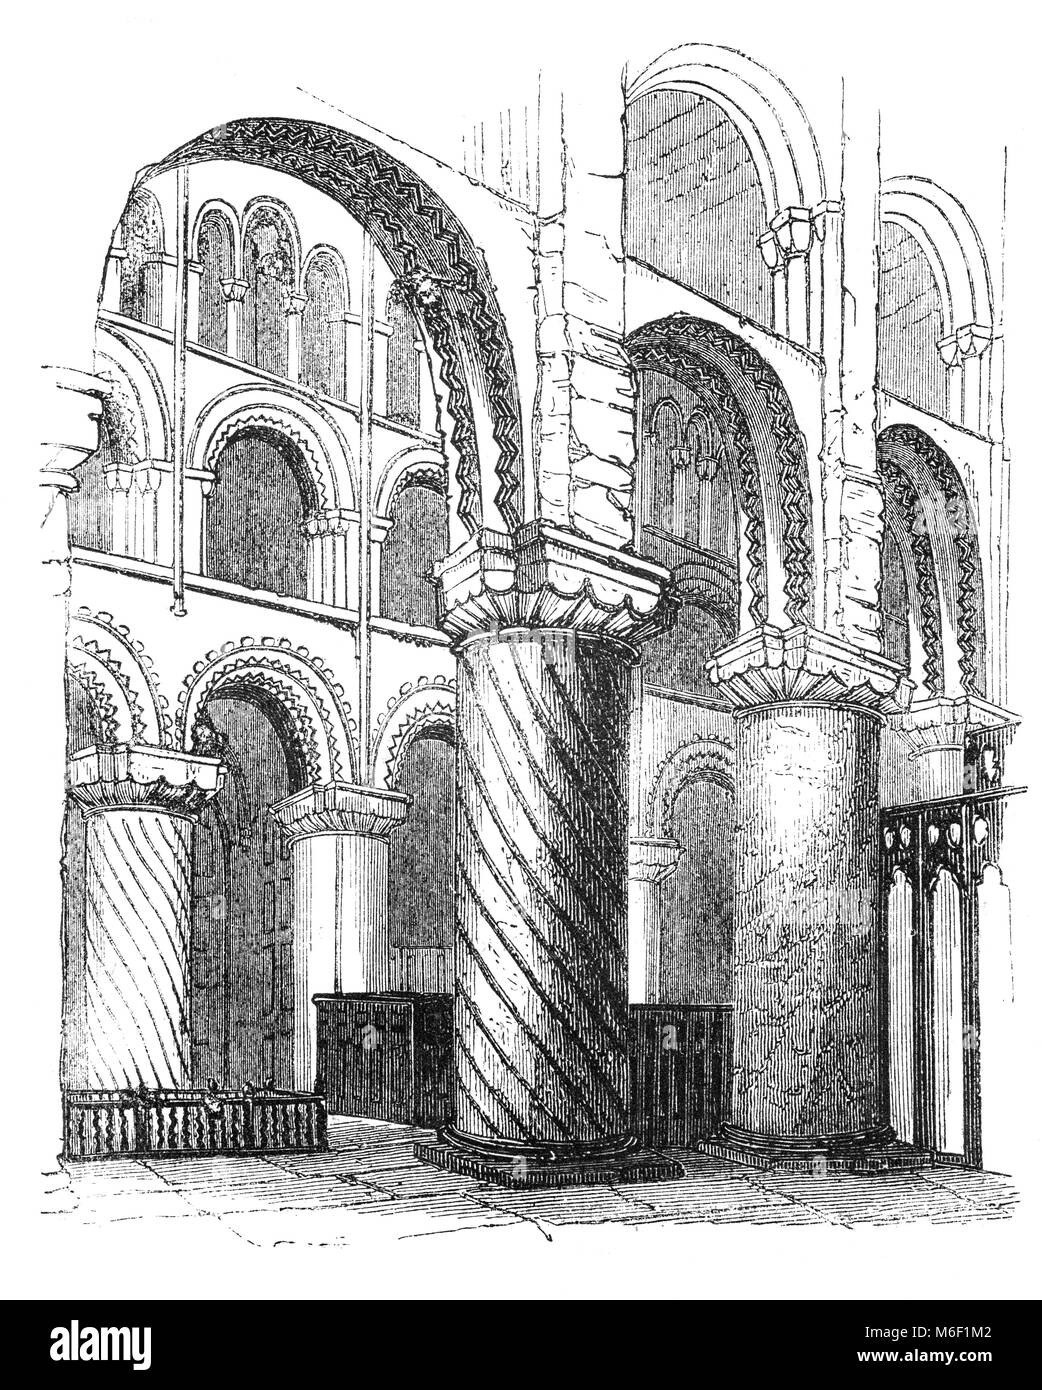 L'interno dell'abbazia di Waltham Santa Croce e San Lorenzo attraverso il fiume Lea nella città di Waltham Abbey Essex, Inghilterra. L'edificio attuale risale principalmente dall'inizio del XII secolo ed è un esempio di architettura normanna. Foto Stock